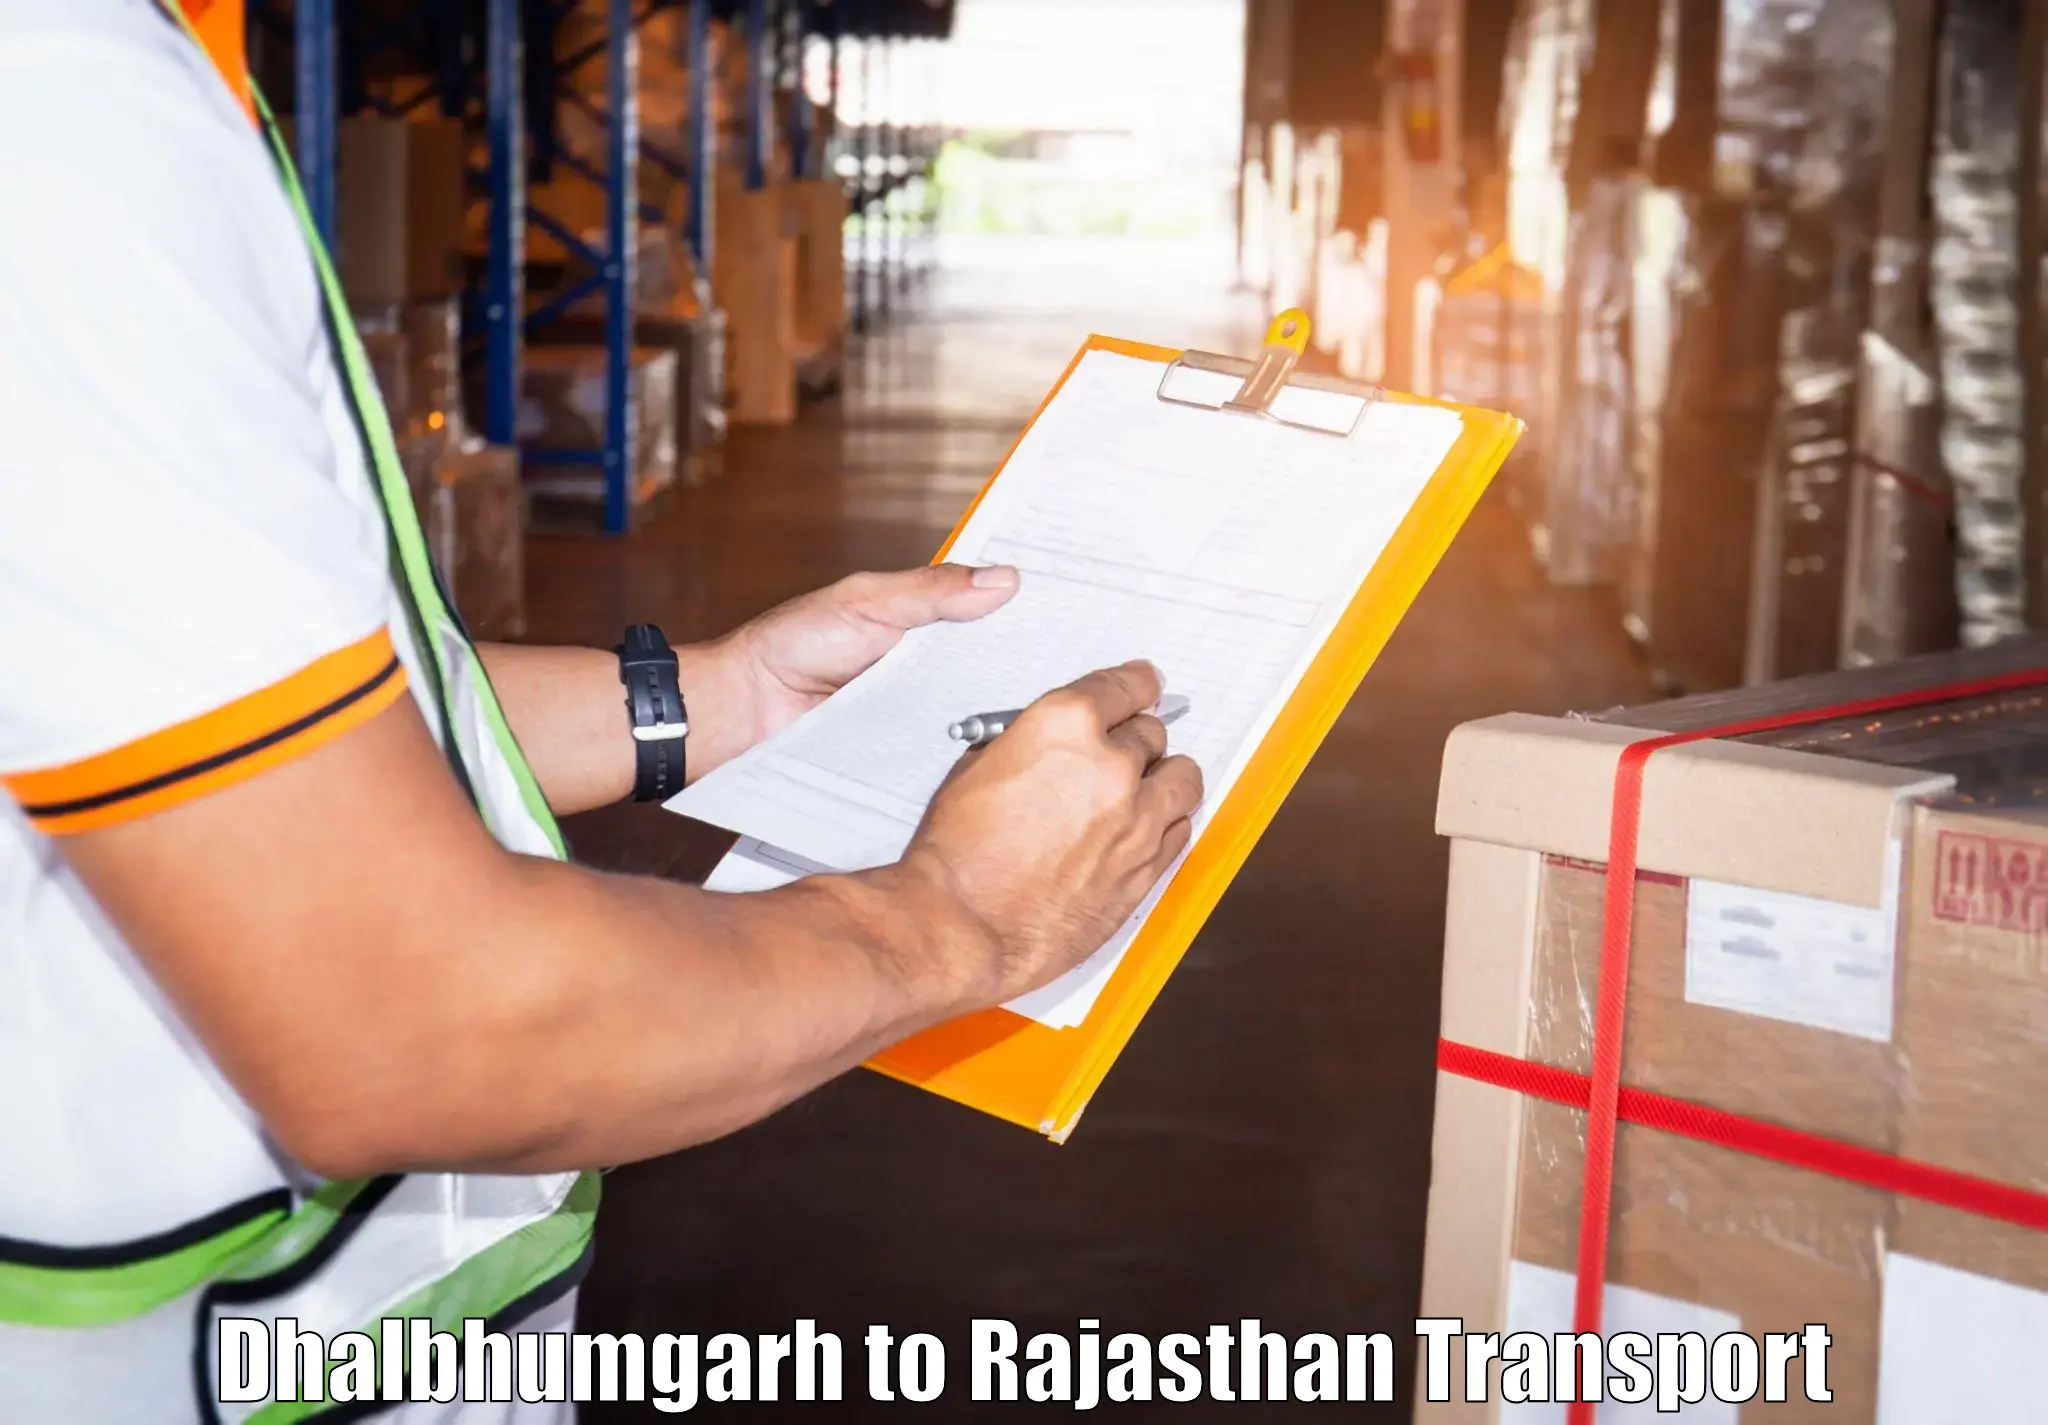 Cargo transport services Dhalbhumgarh to Chirawa